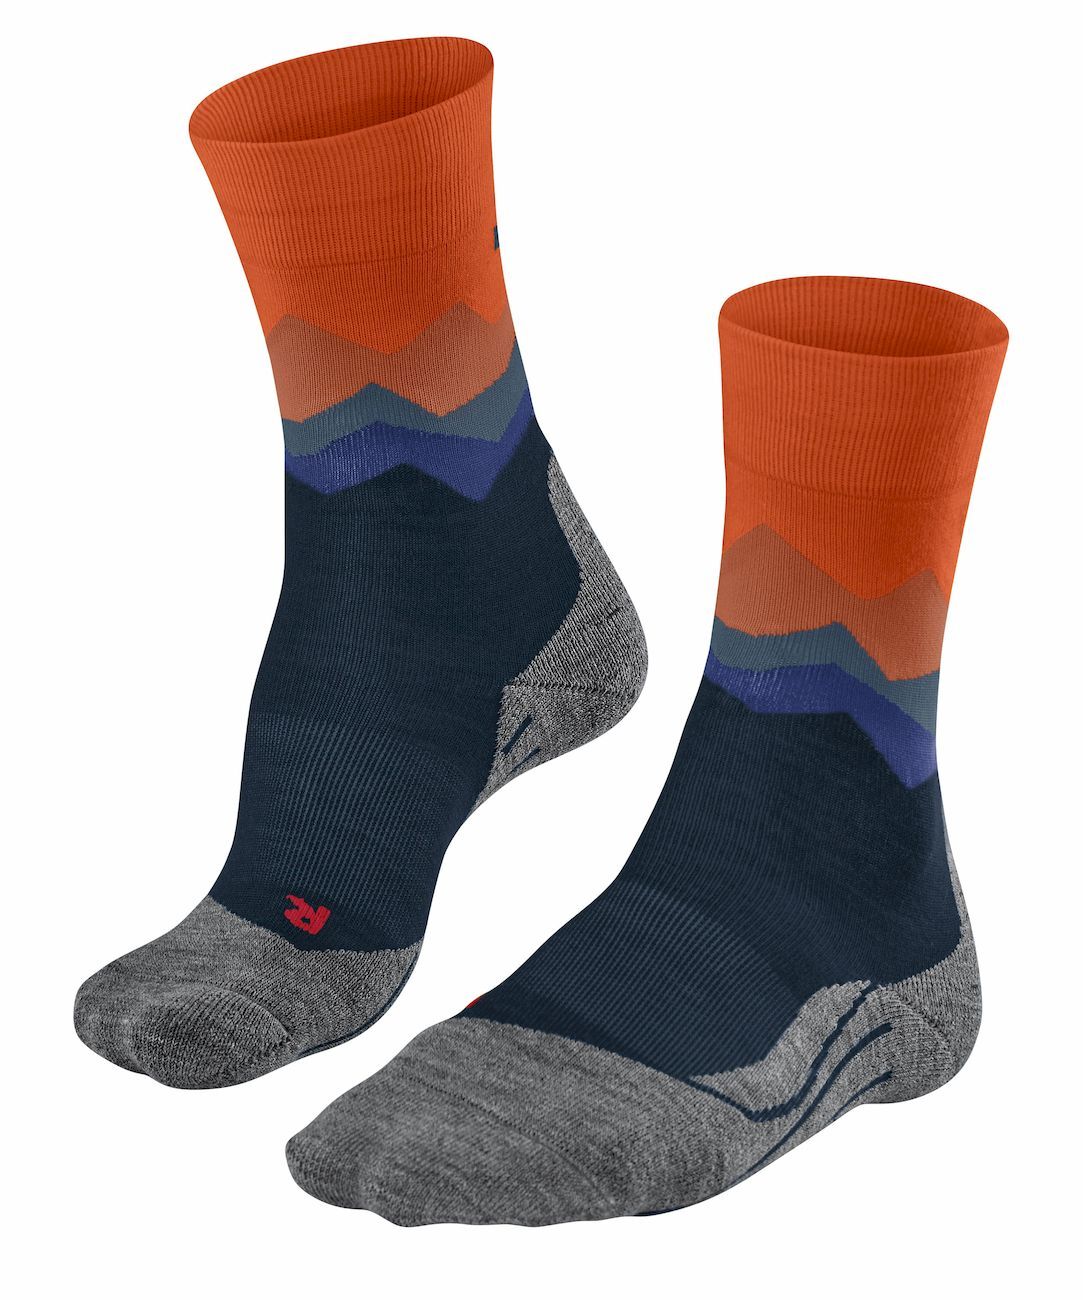 Falke TK2 Crest - Hiking socks - Men's